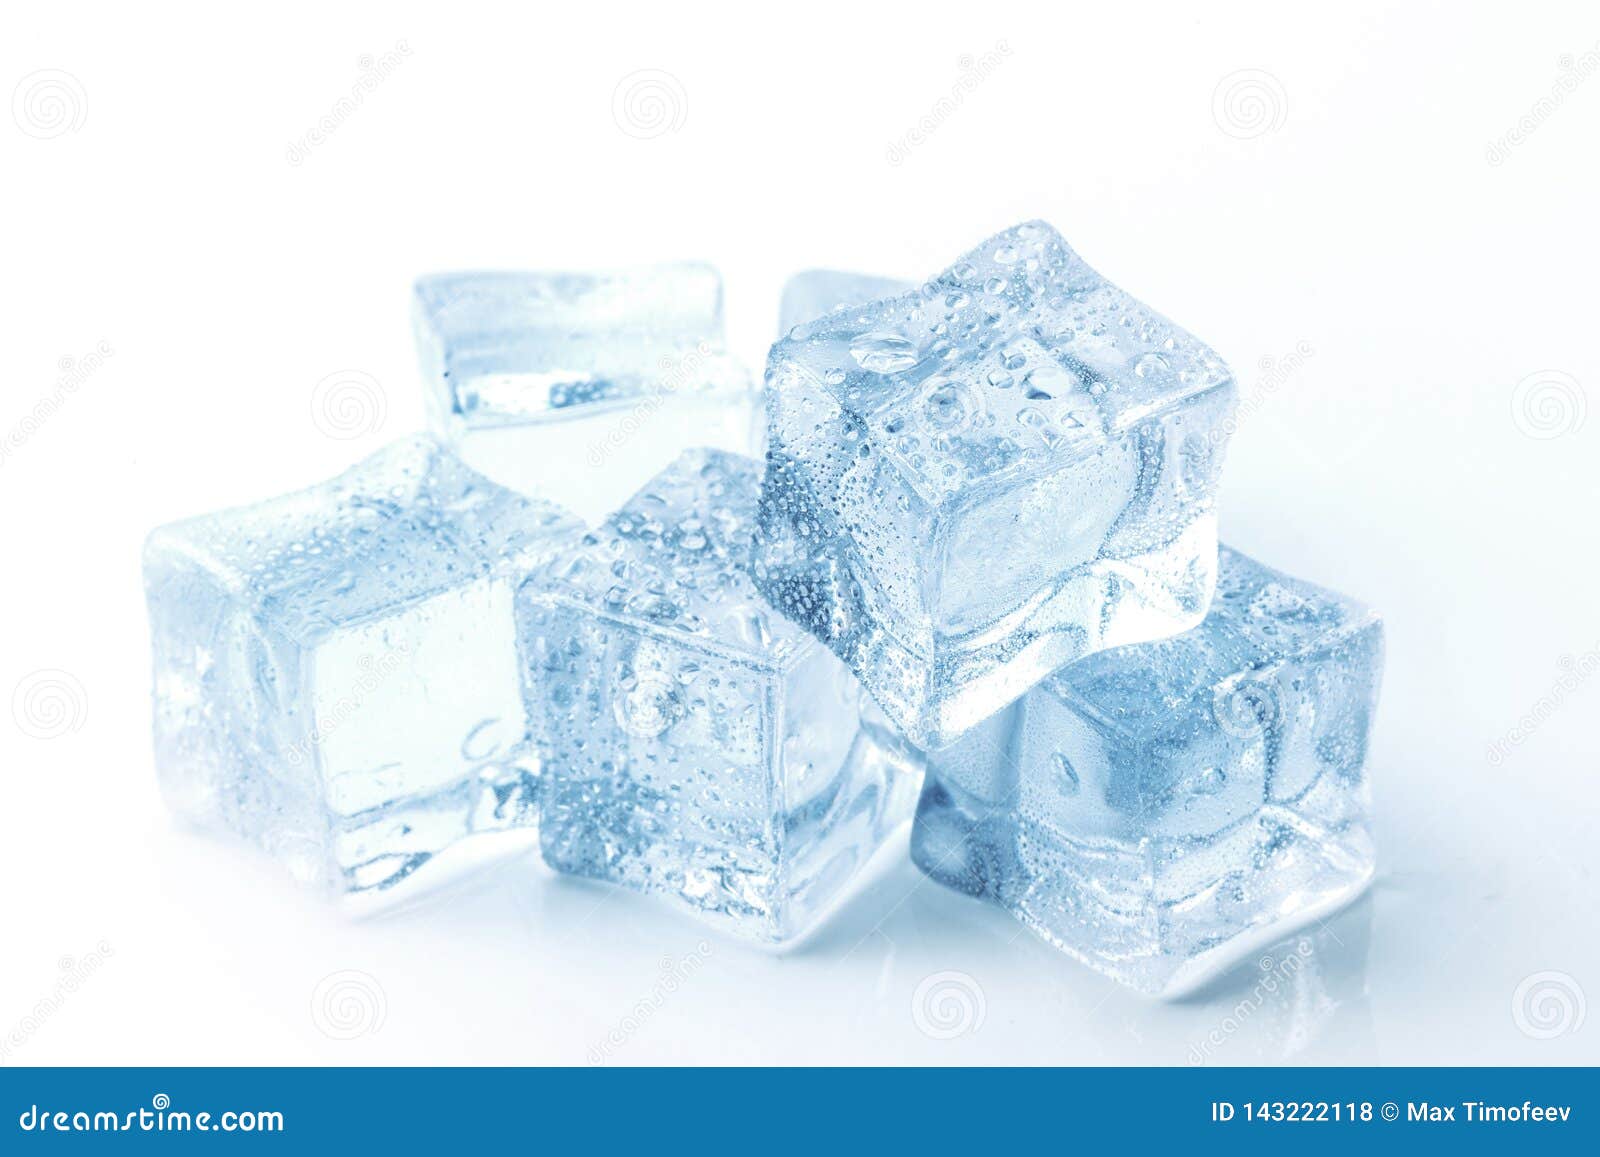 Bandeja de hielo con hielo y cubitos de hielo derretido en blanco